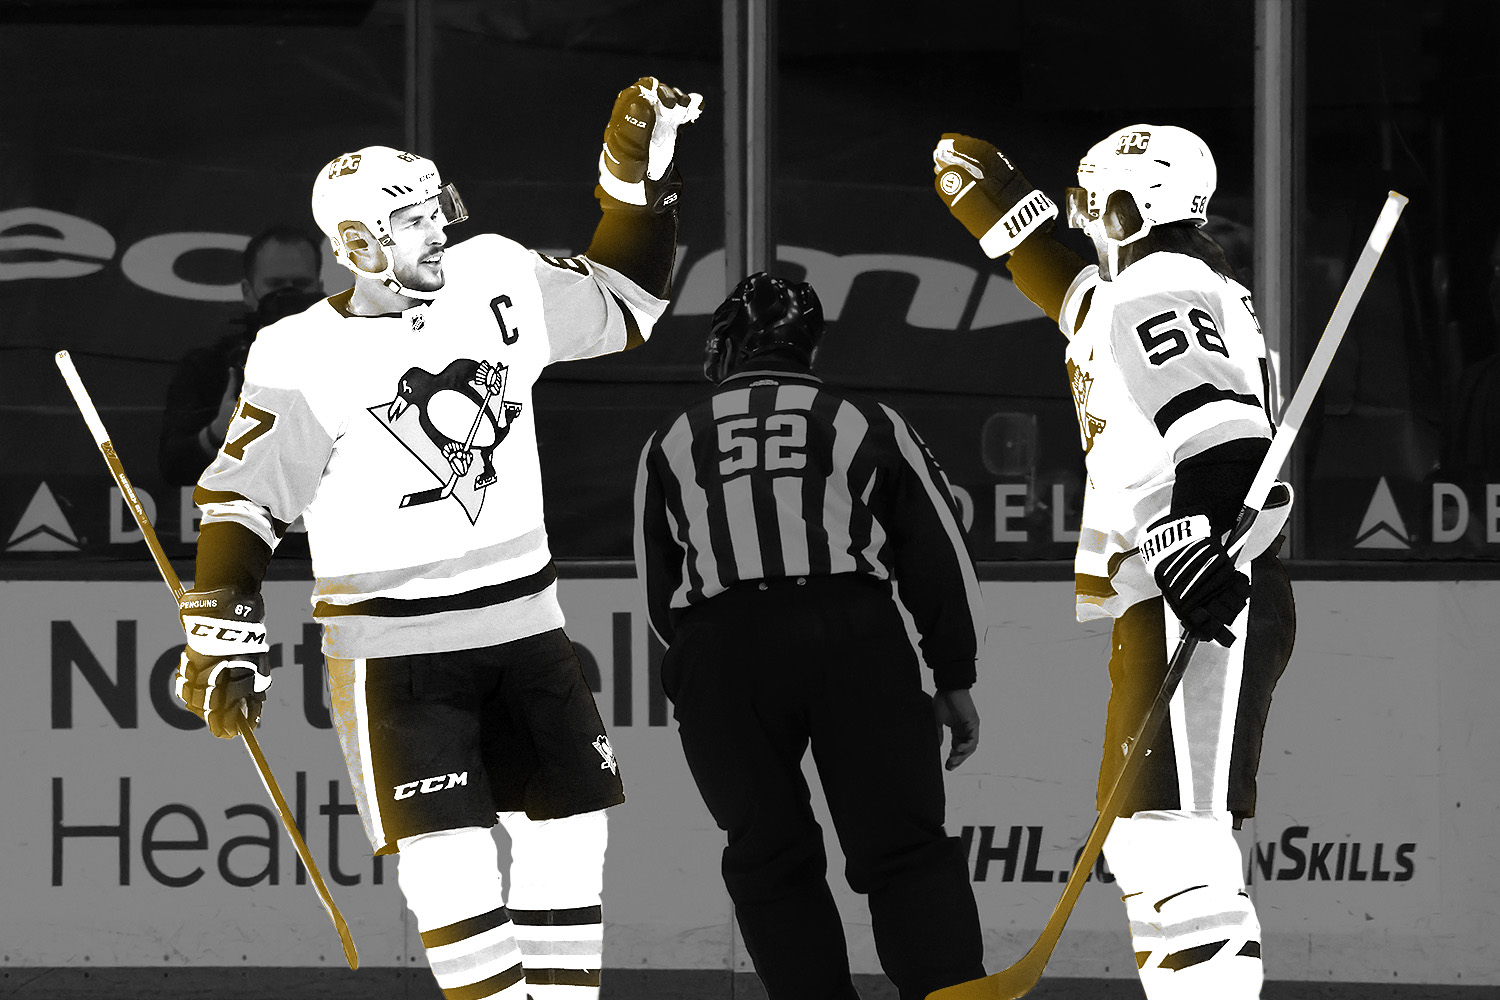 Pittsburgh Penguins' Mario Lemieux skates around the ice holding